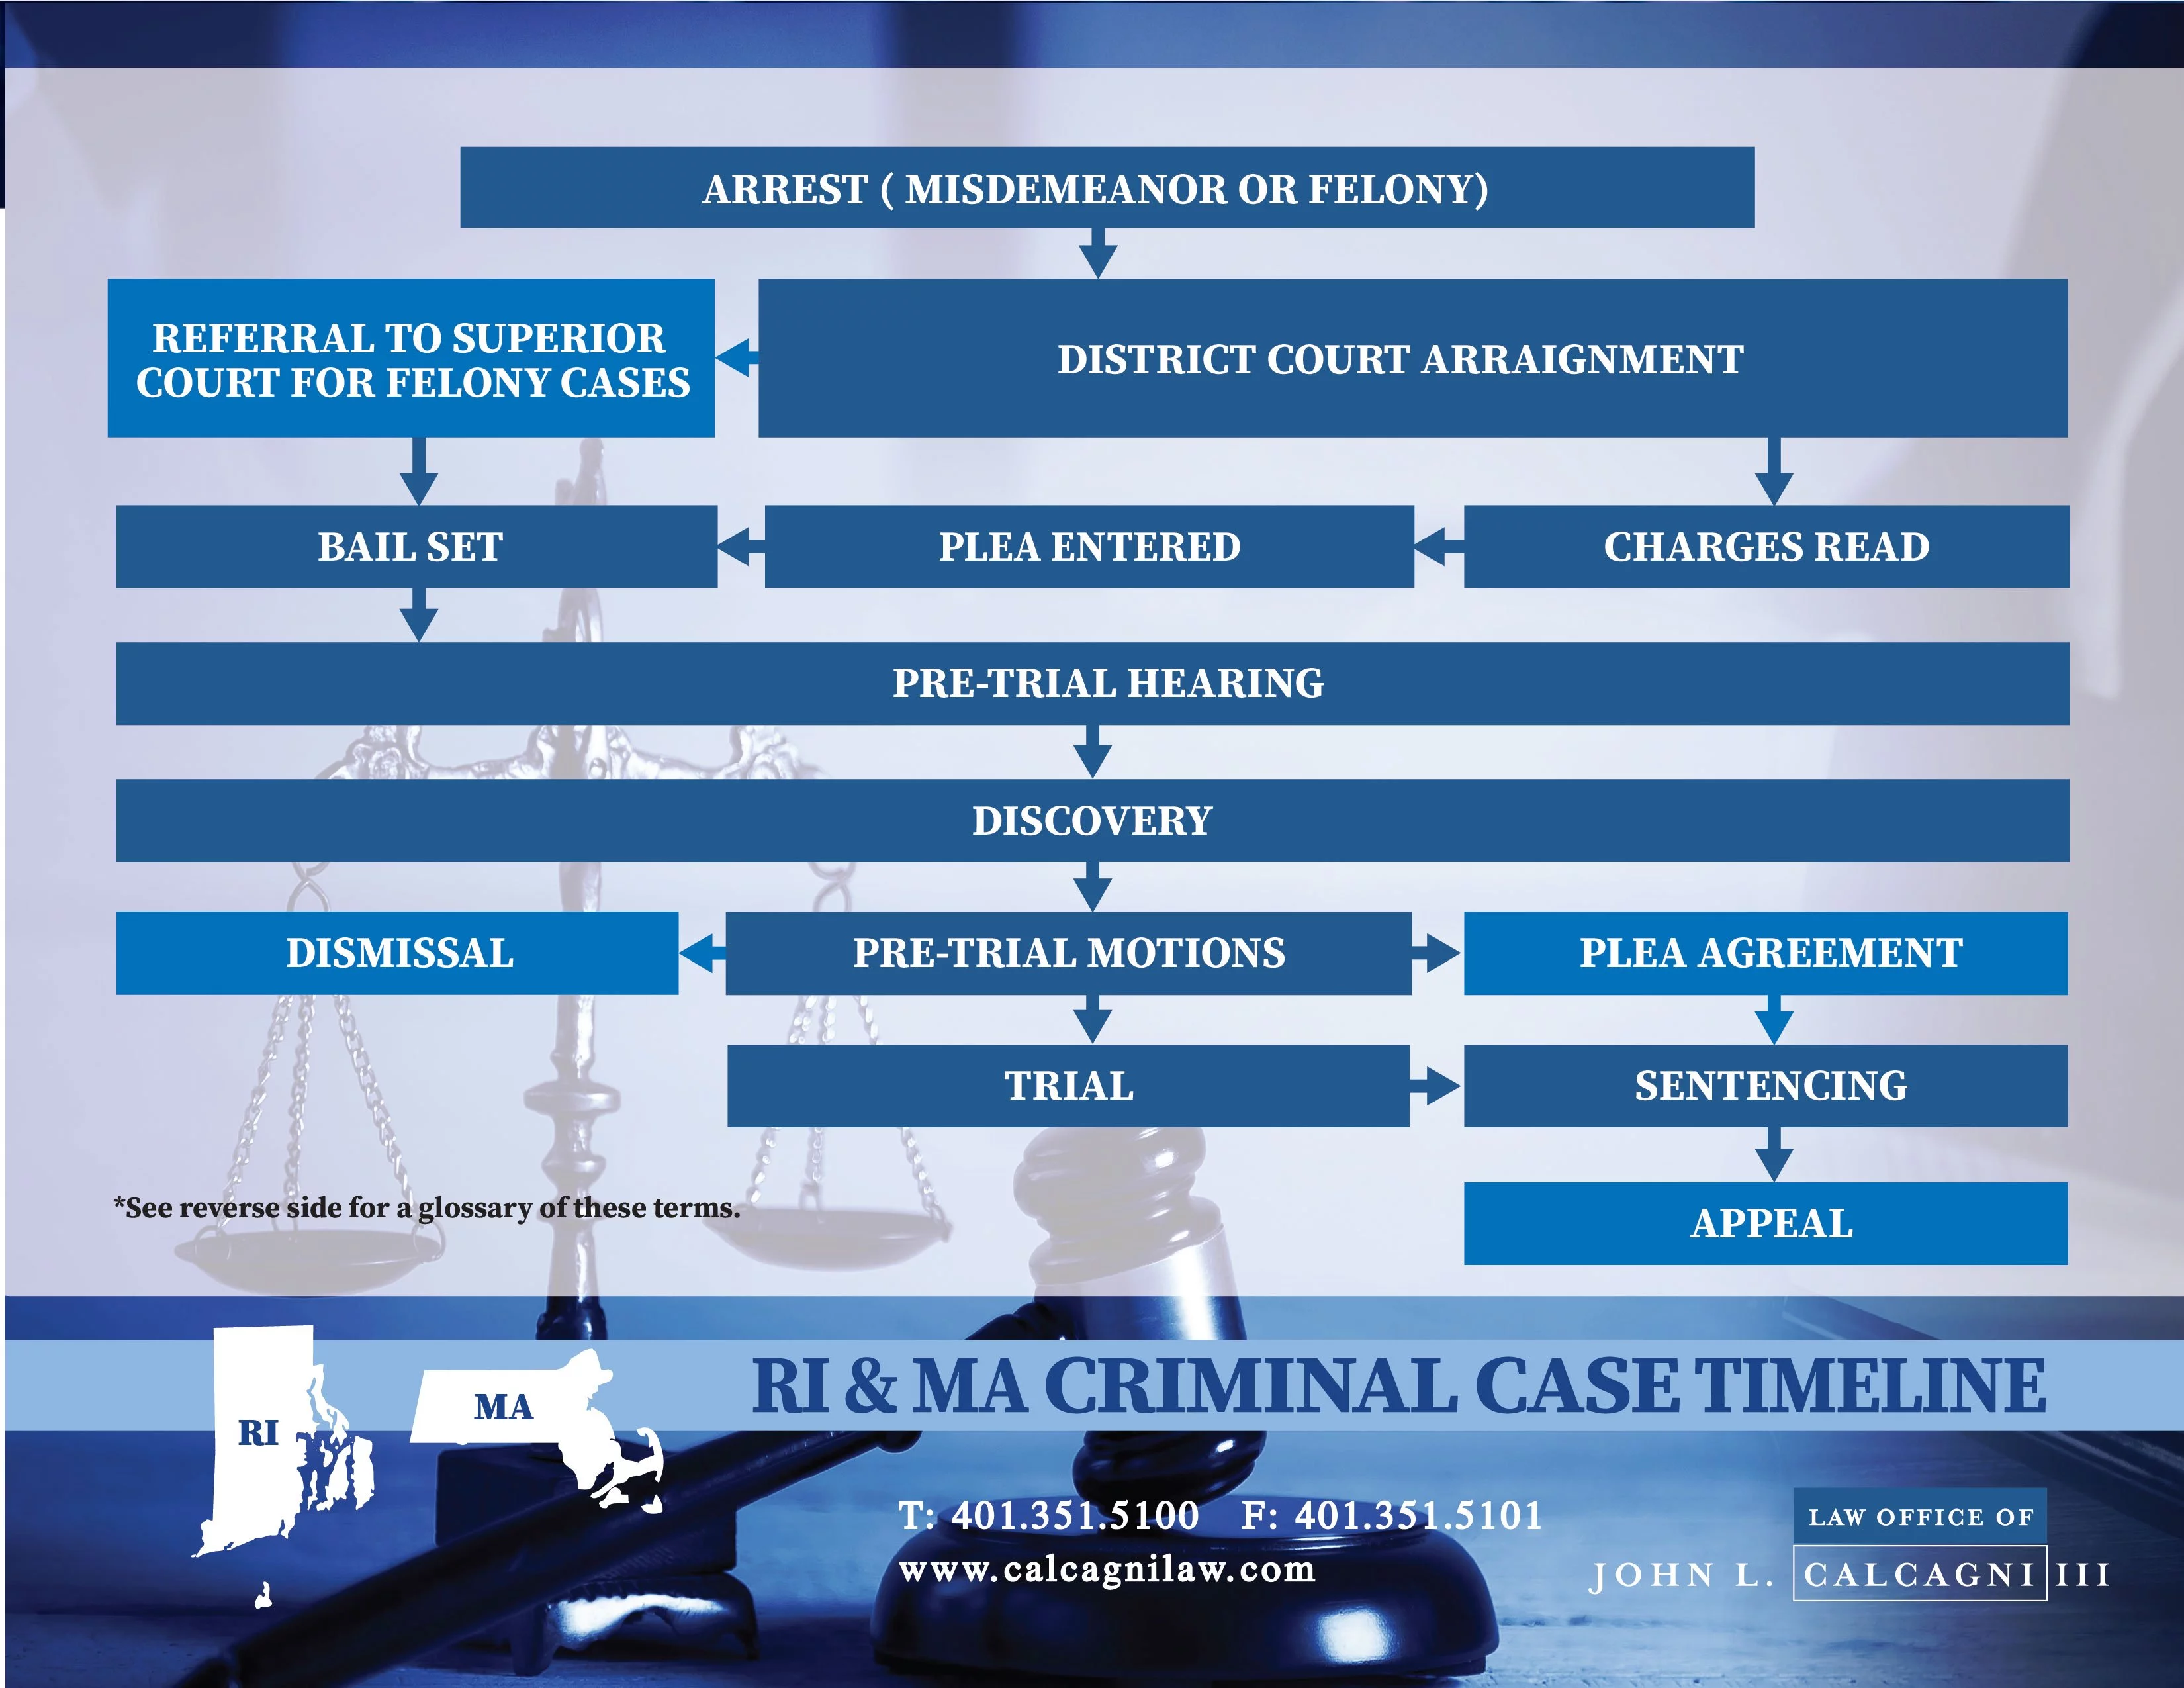 Rhode Island Criminal Case Timeline